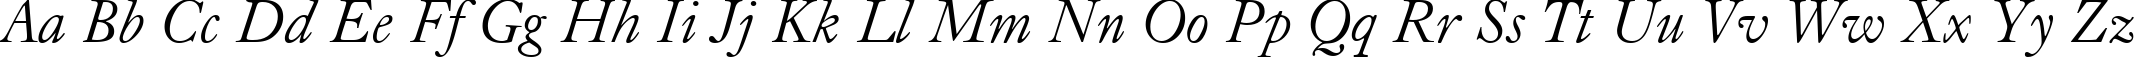 Пример написания английского алфавита шрифтом Caslon Old Face Italic BT